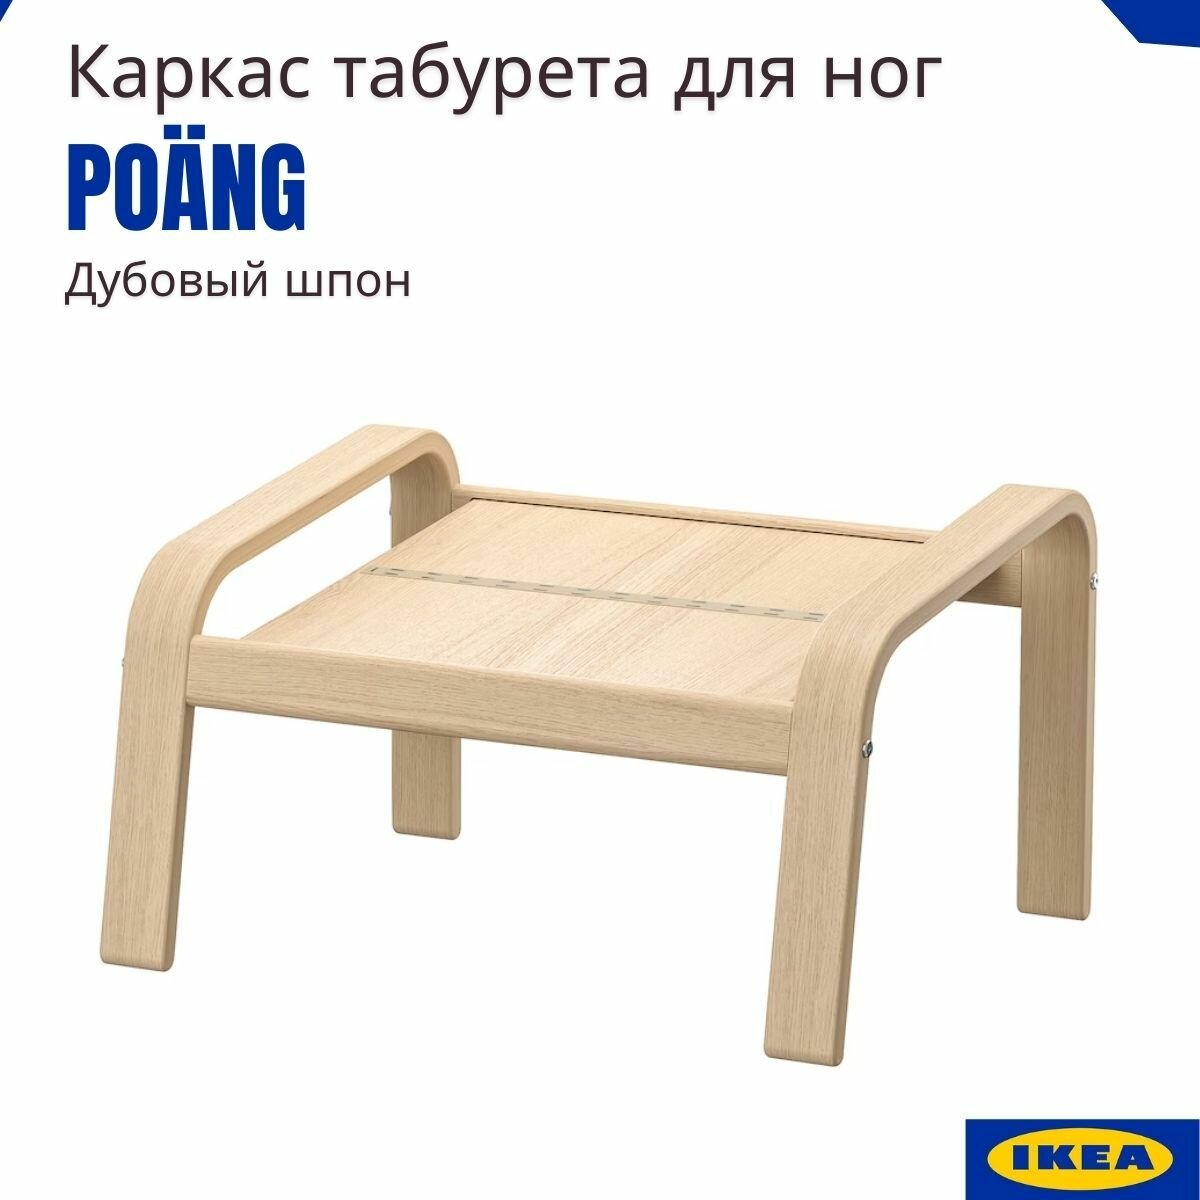 Пуф для ног табурет икеа Поэнг. Подставка для ног IKEA Poang. Банкетка оттоманка 1 шт